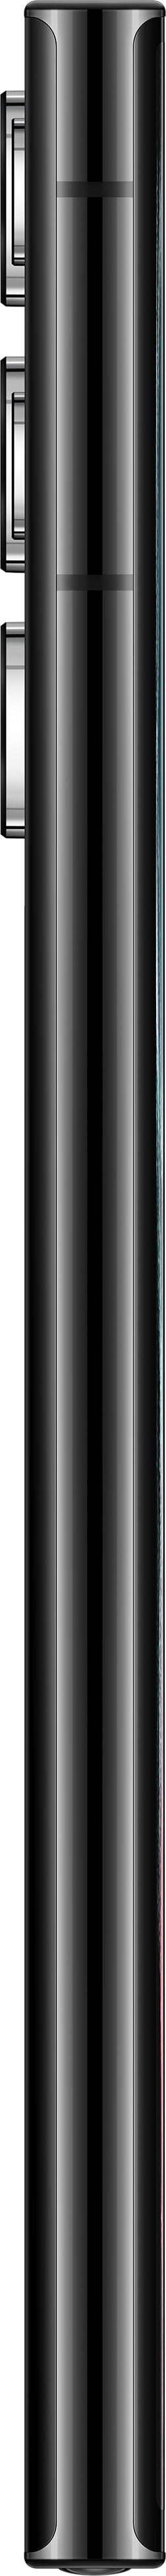 Samsung - Galaxy S22 Ultra 128GB - Phantom Black (Verizon)_4